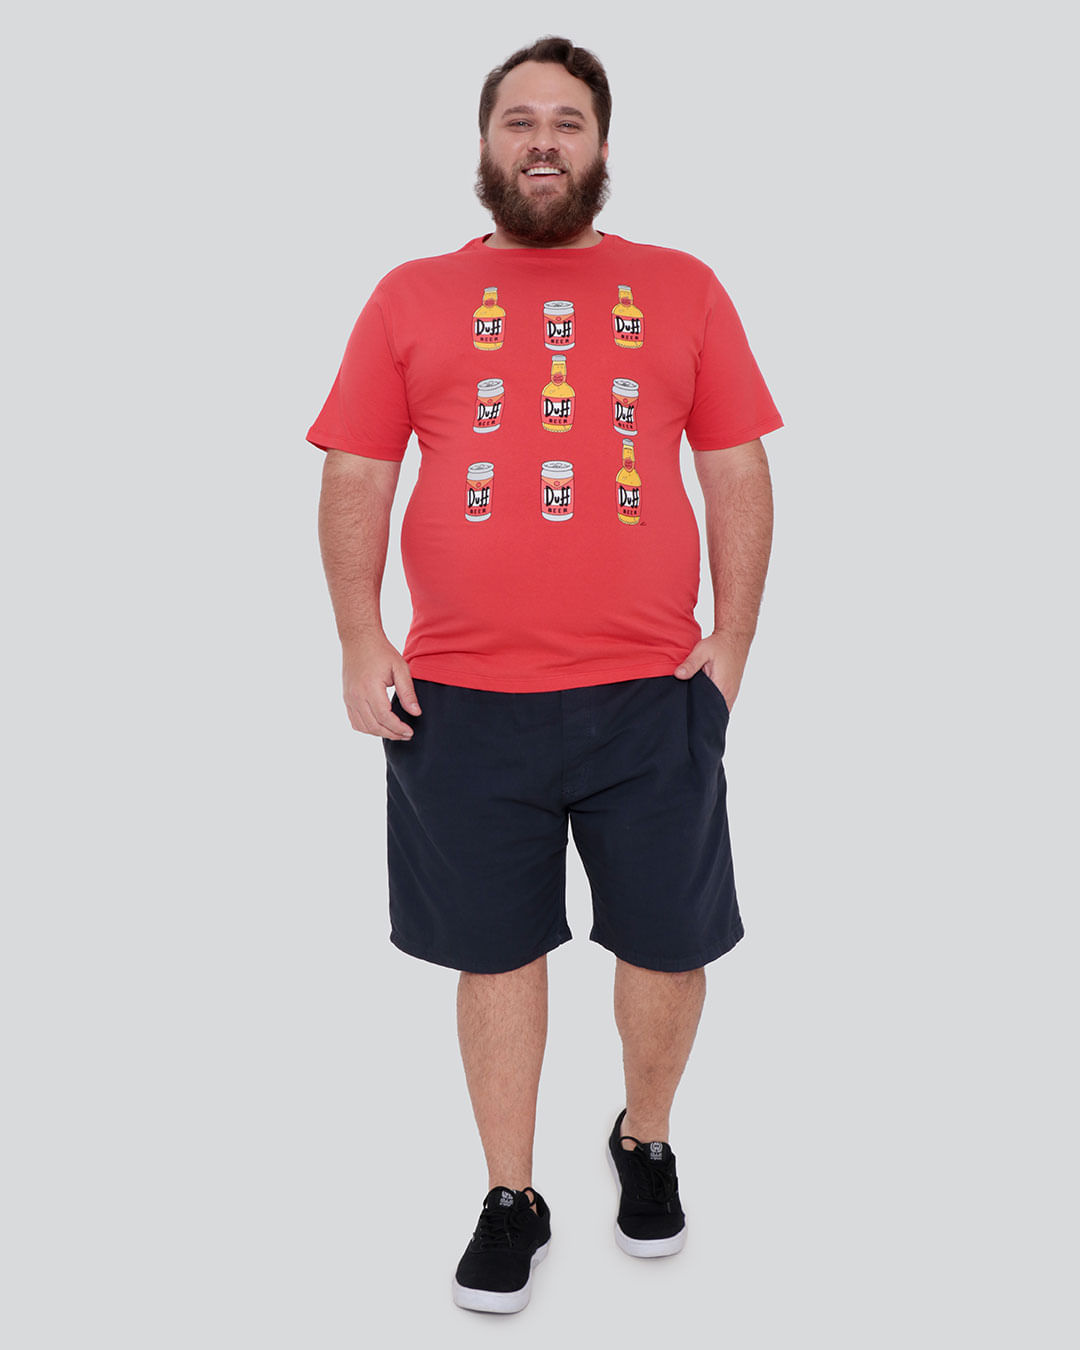 Camiseta-Plus-Size-Masculina-Estampa-Duff-Beer-Simpsons-Vermelha